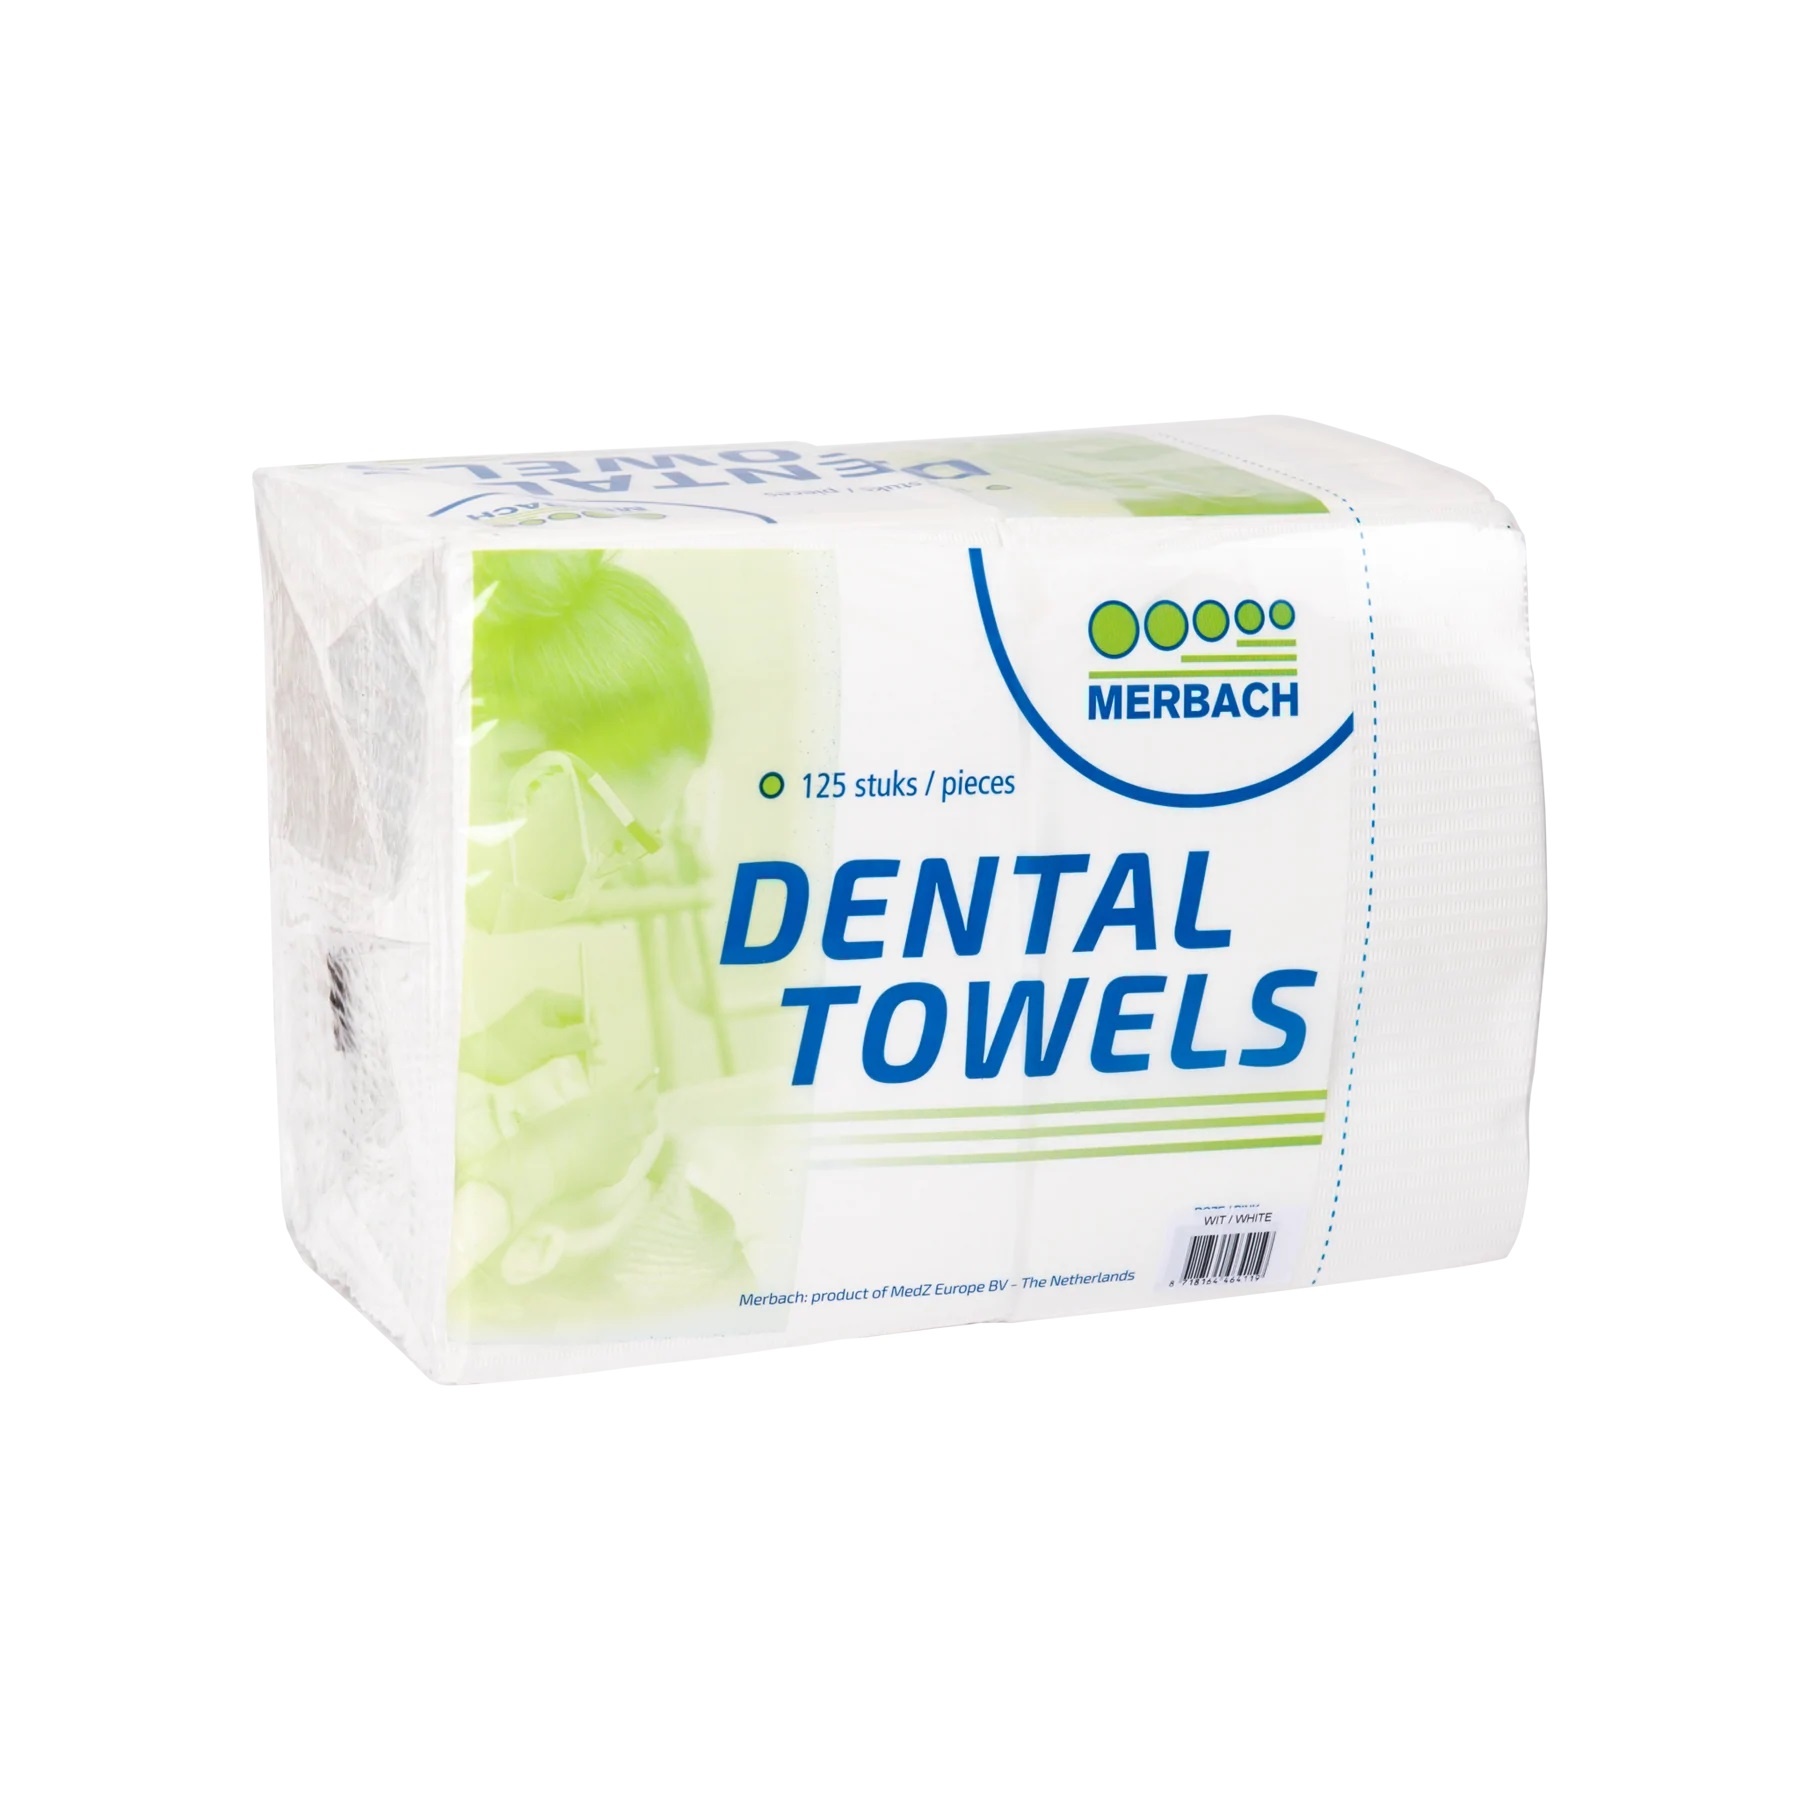 Merbach Dental Towels Wit - 125 stuks - Maxxecure